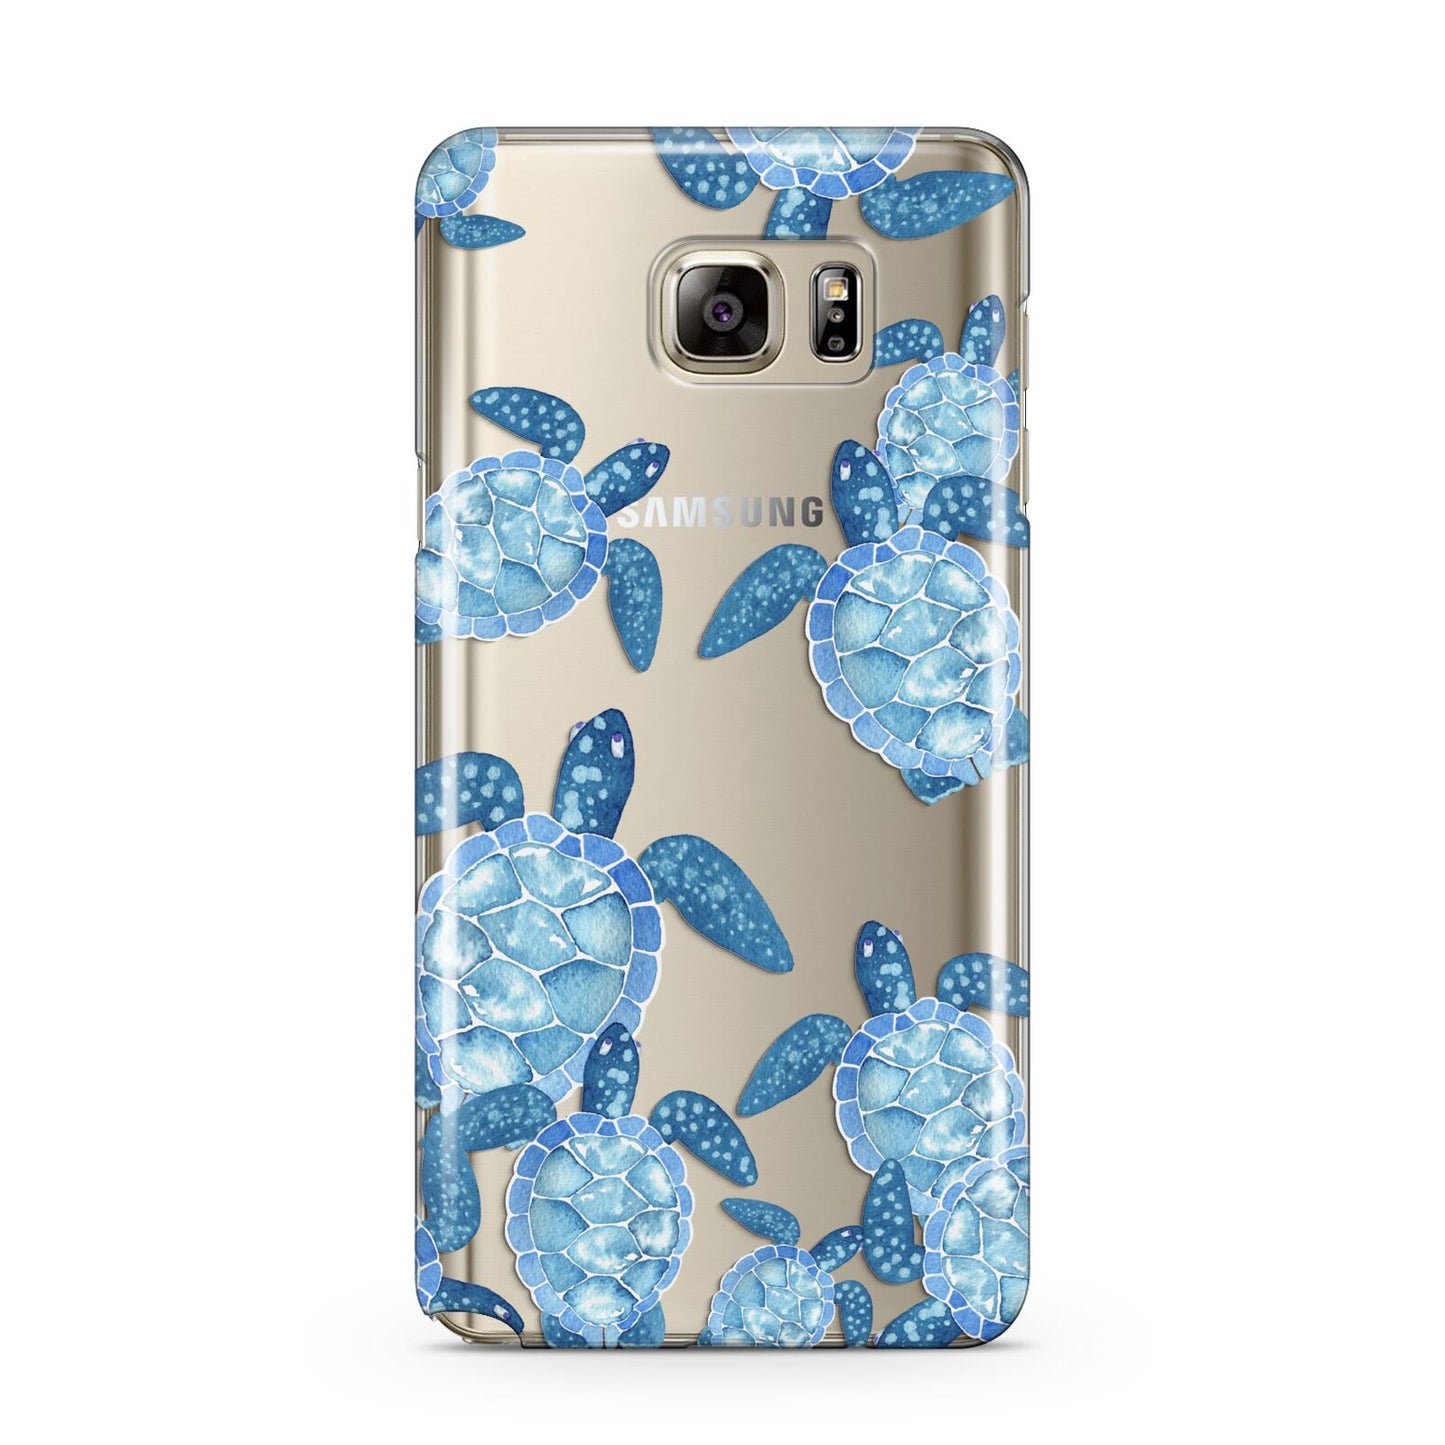 Turtle Samsung Galaxy Note 5 Case